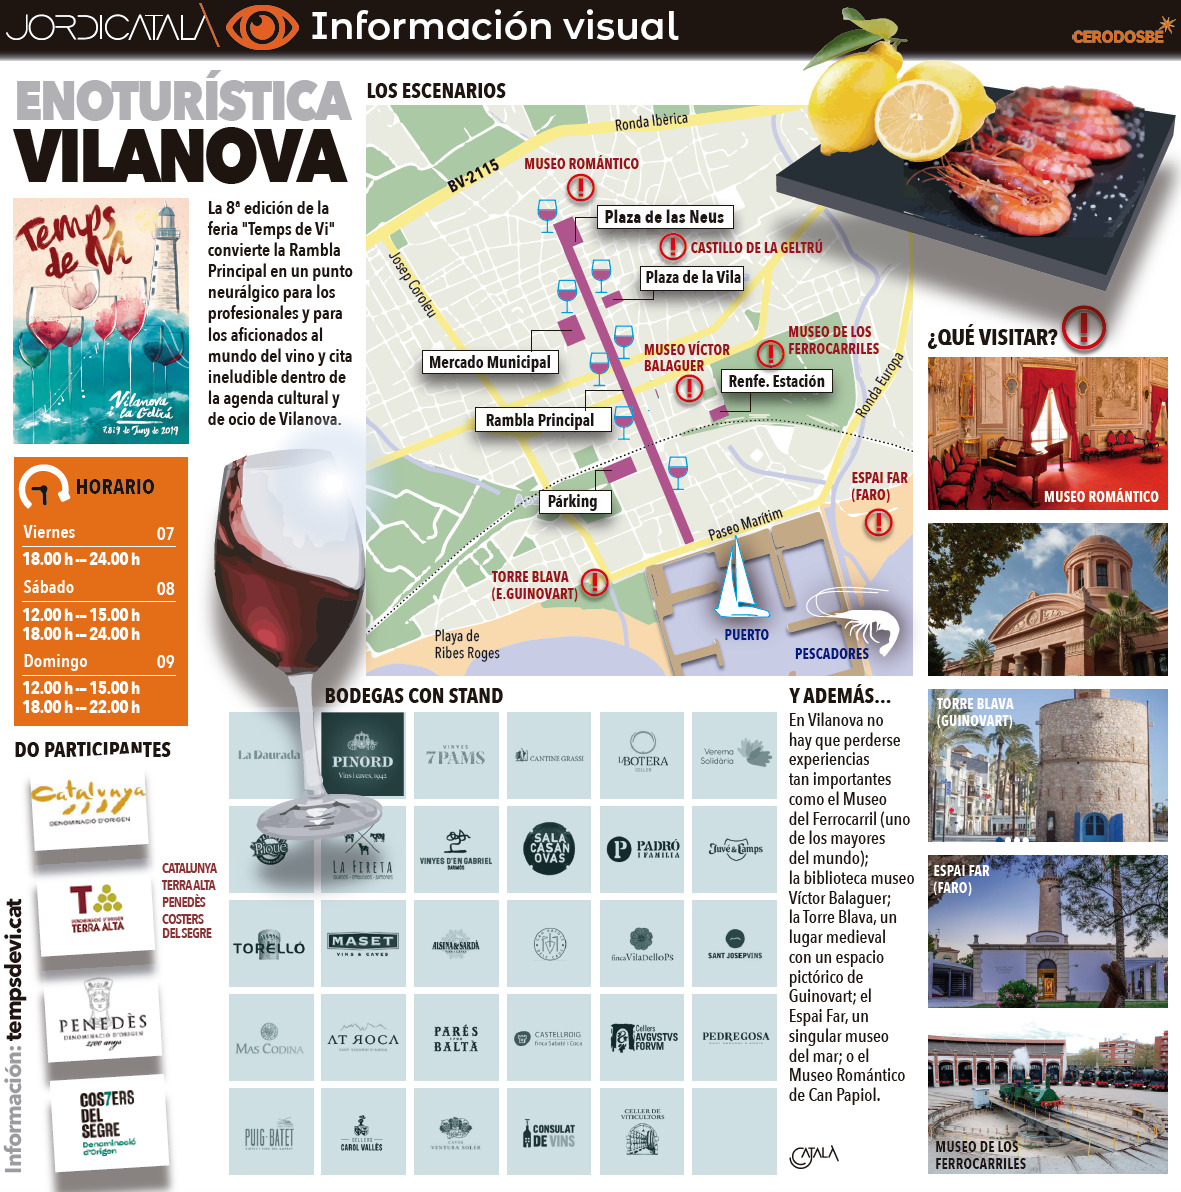 Info 1: Vilanova